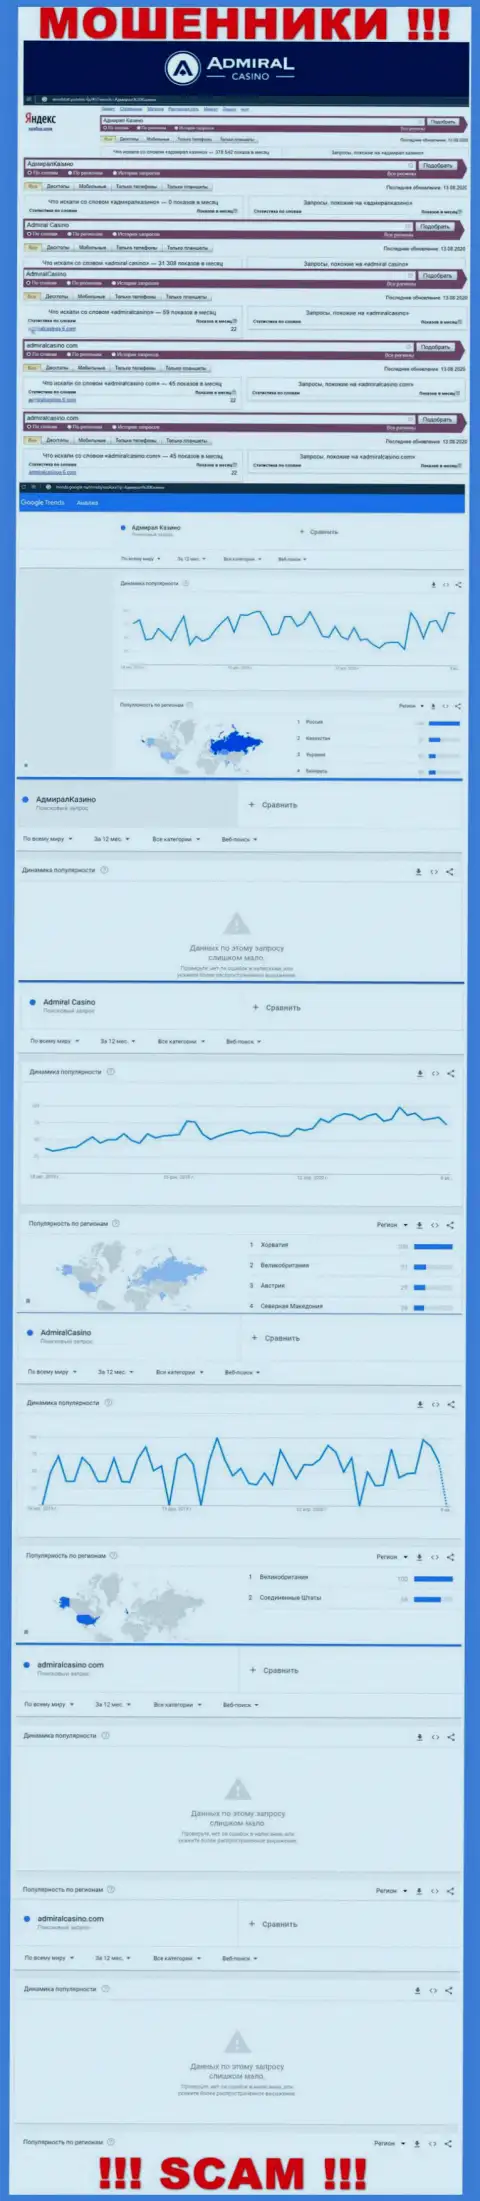 Сколько людей пытались найти информацию о АдмиралКазино Ком - статистика поисковых запросов по данной конторе